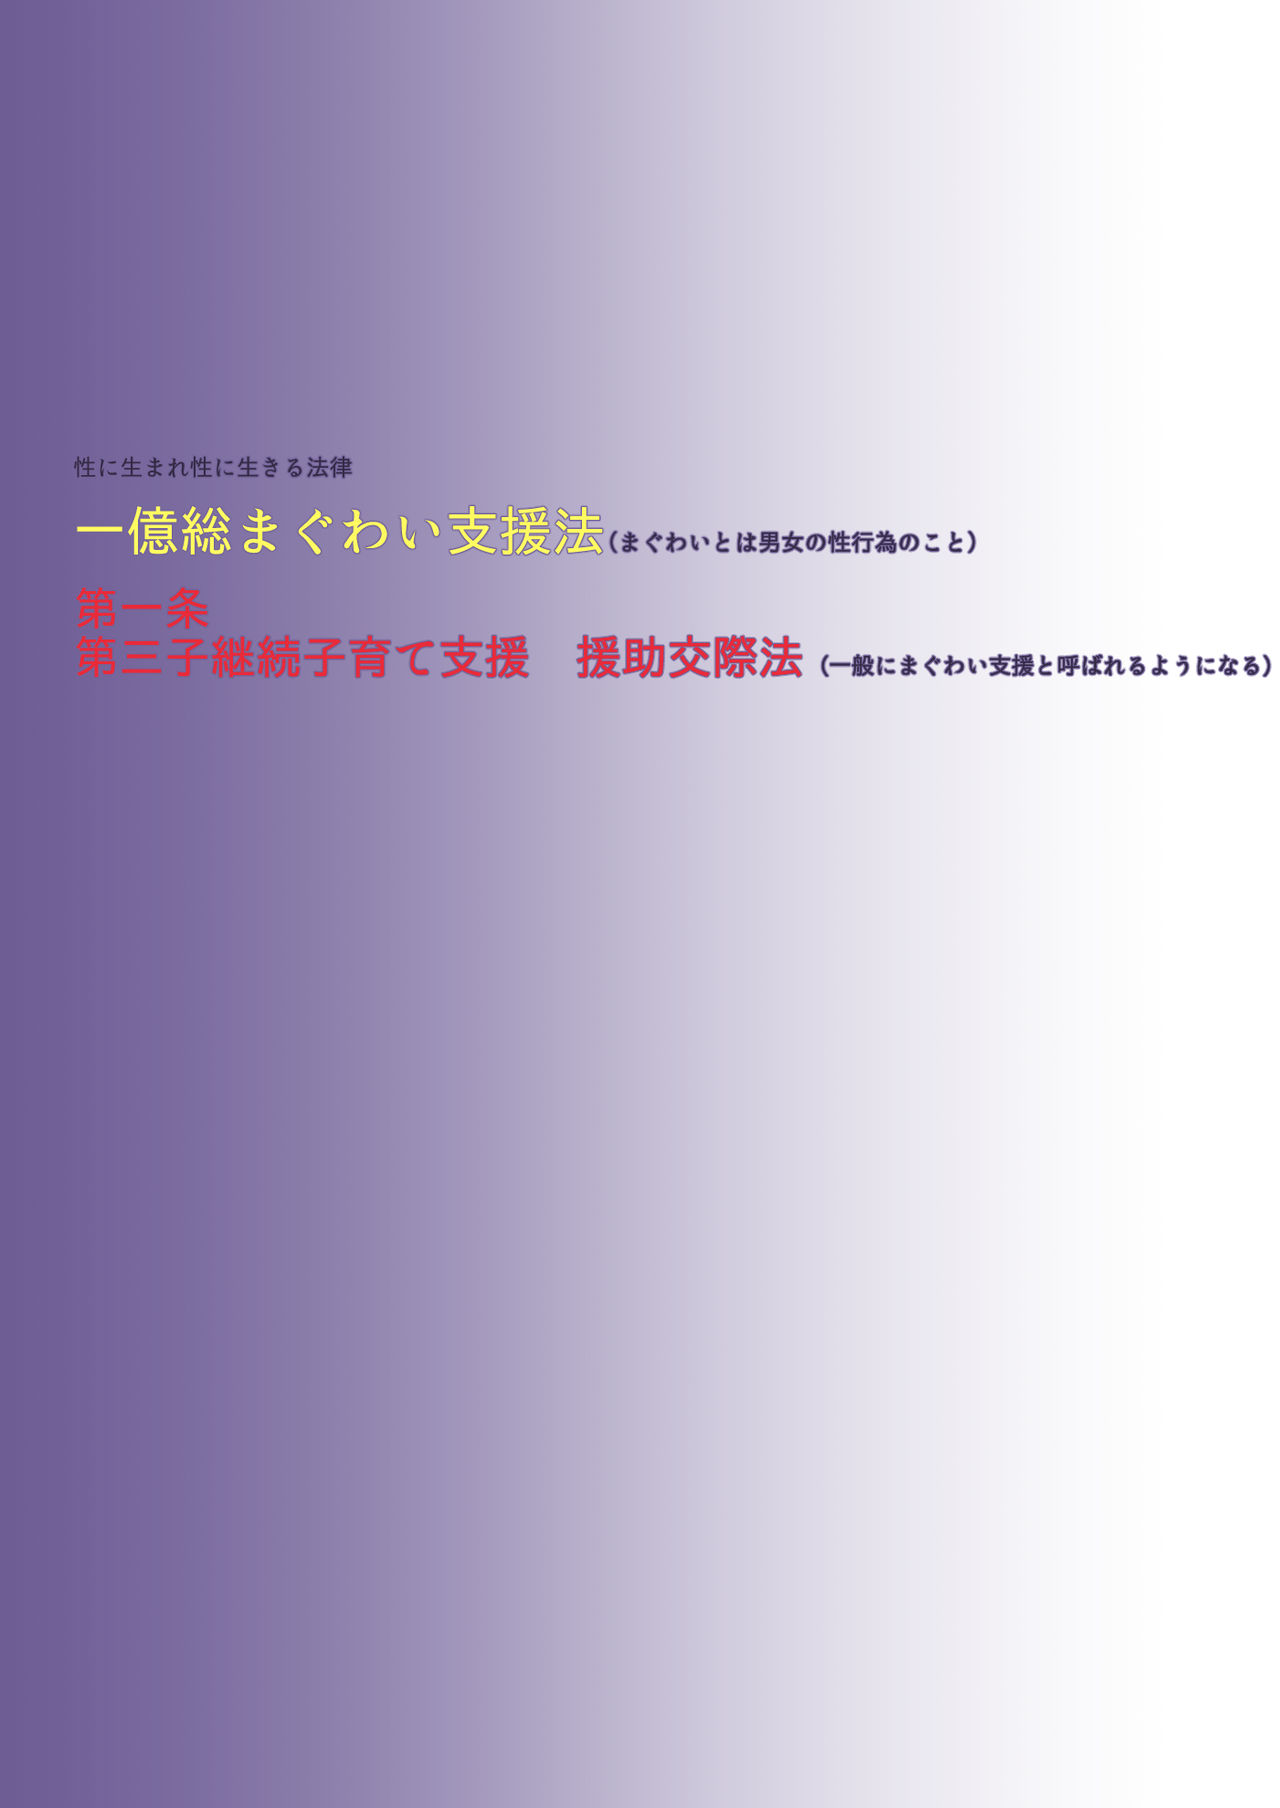 [Torara Studio] Shinpou!! Ichiokusou Maguwai Shienhou [トララスタジオ] 新法!!一億総まぐわい支援法